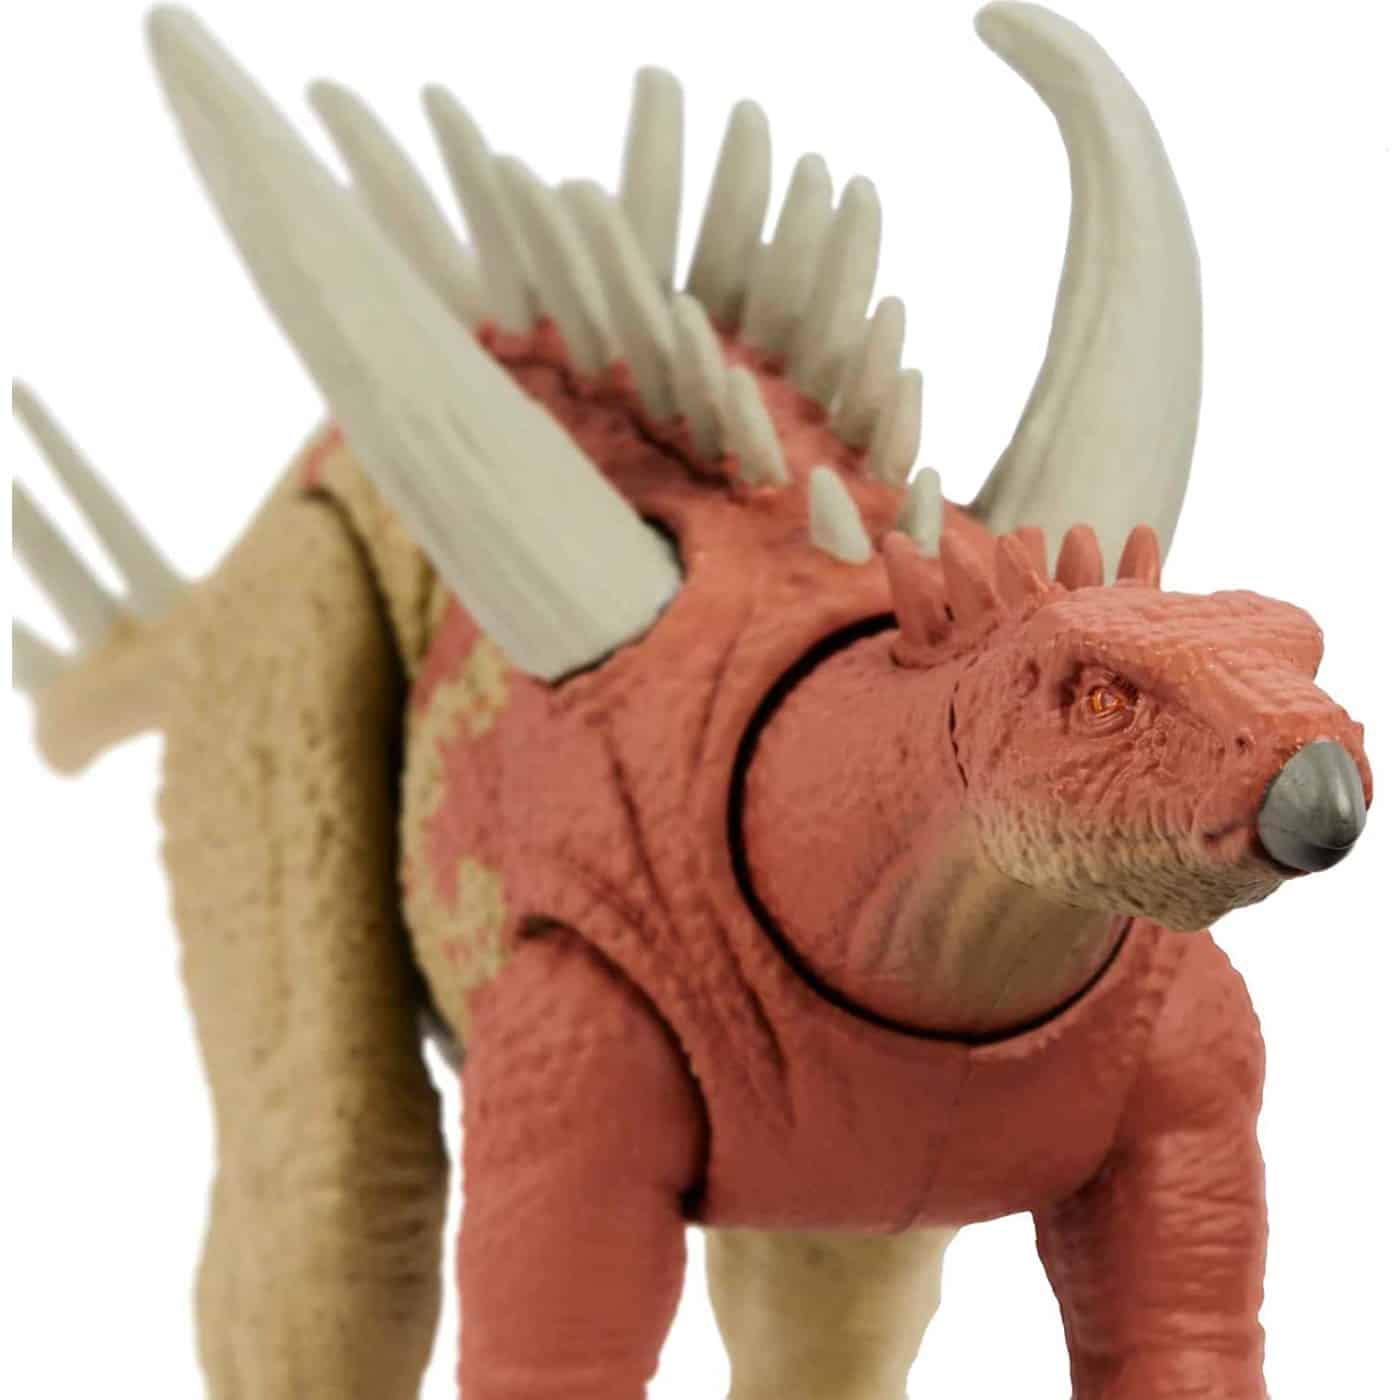 Mattel Jurassic World Strike Attack Gigantspinosaurus Νεες Φιγουρες Δεινοσαυρων Με Σπαστα Μελη